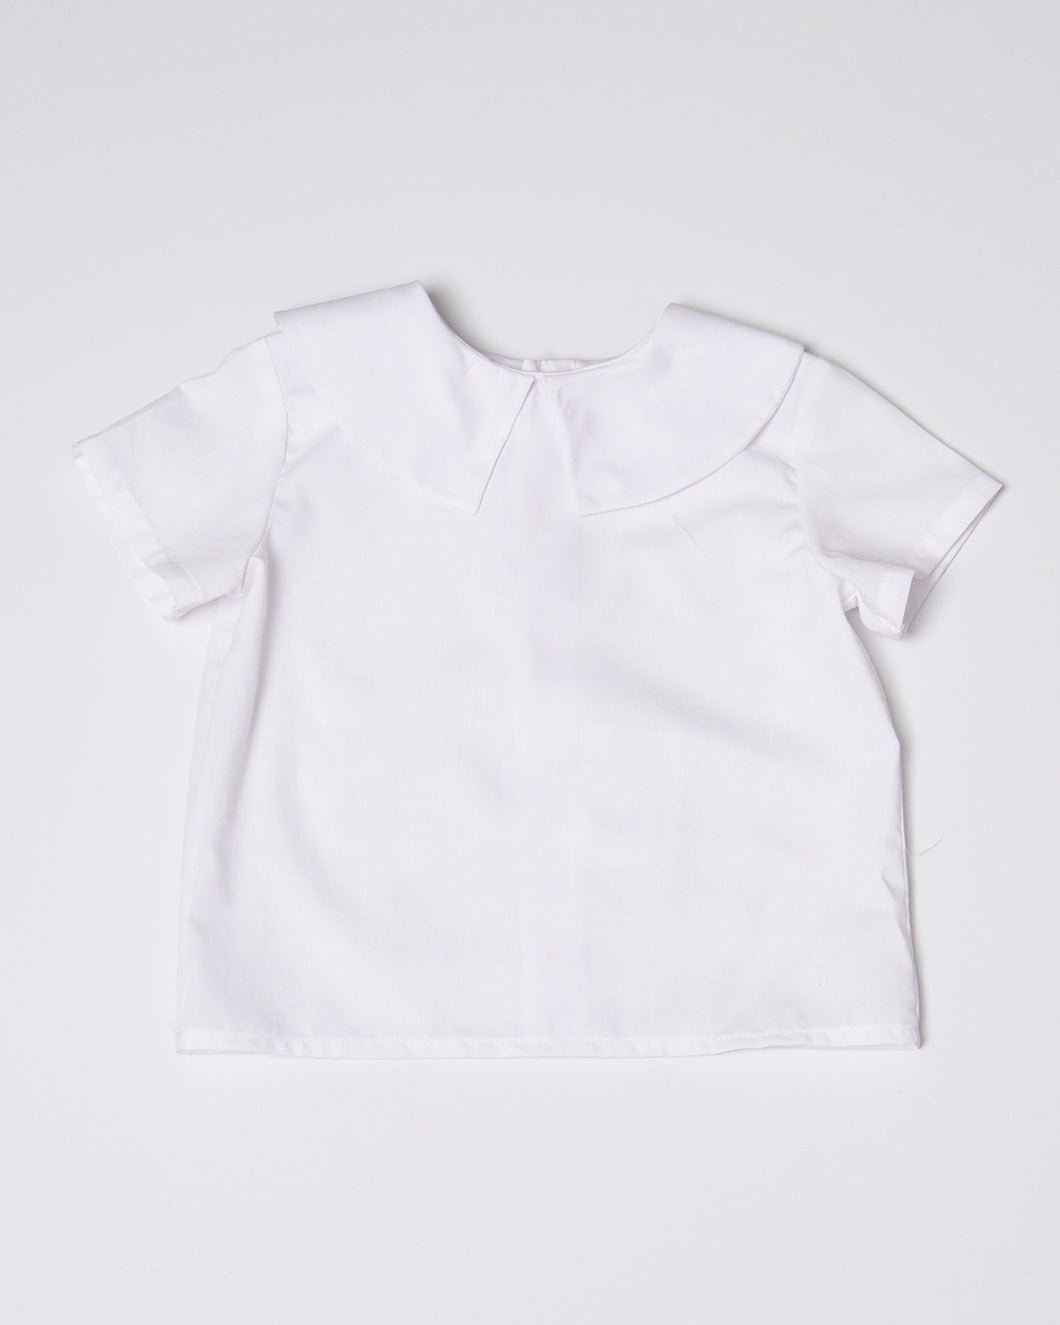 Little Boys Short Sleeve Shirt in White - Patrick Boys White Short Sleeve Shirt Made in Easy Care Imperial Batiste